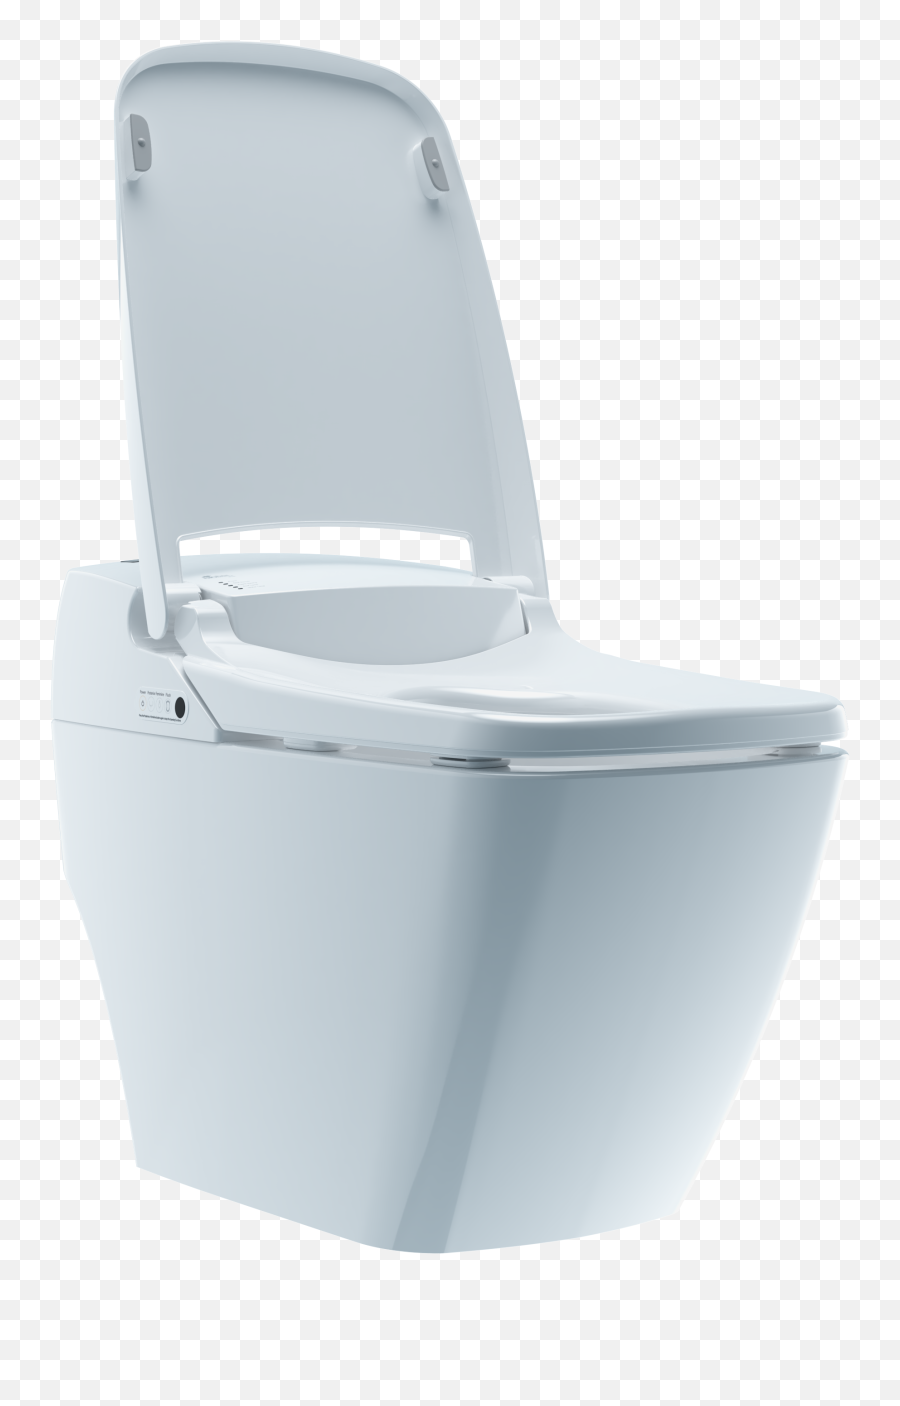 Prodigy Smart Toilet - Biobidet Prodigy Smart Toilet Bidet System Emoji,Toilet Emoji